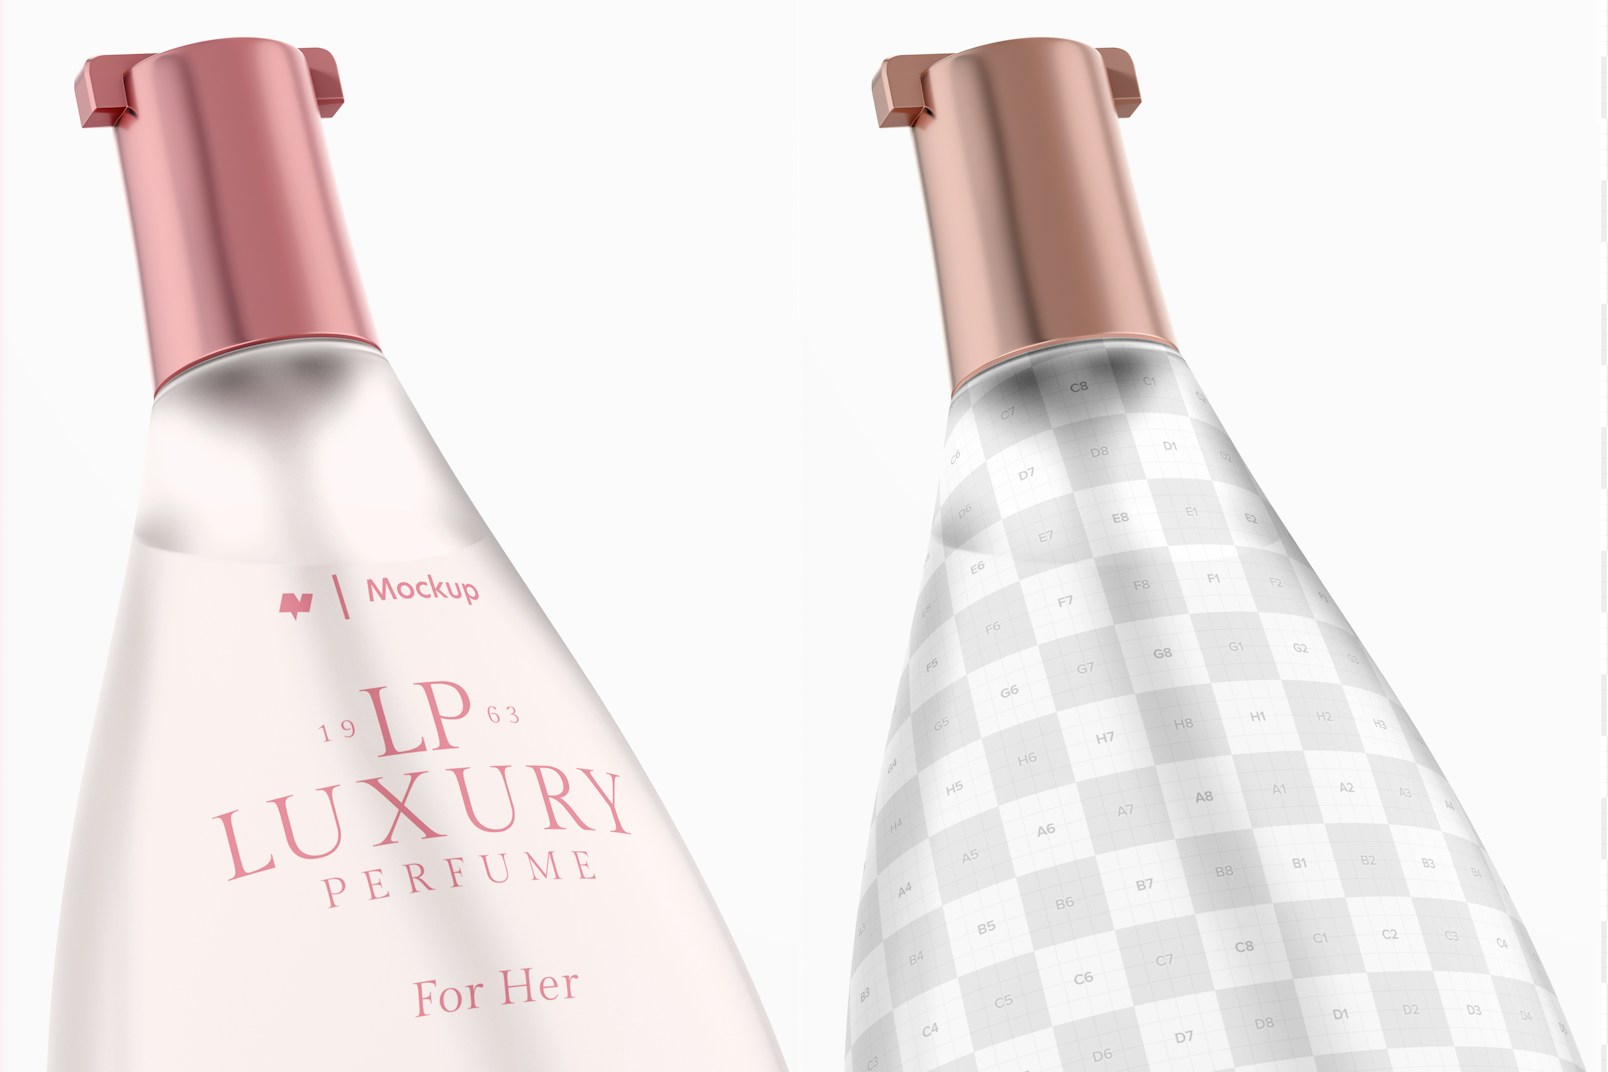 Triangular Luxury Perfume Bottle Mockup, Close Up